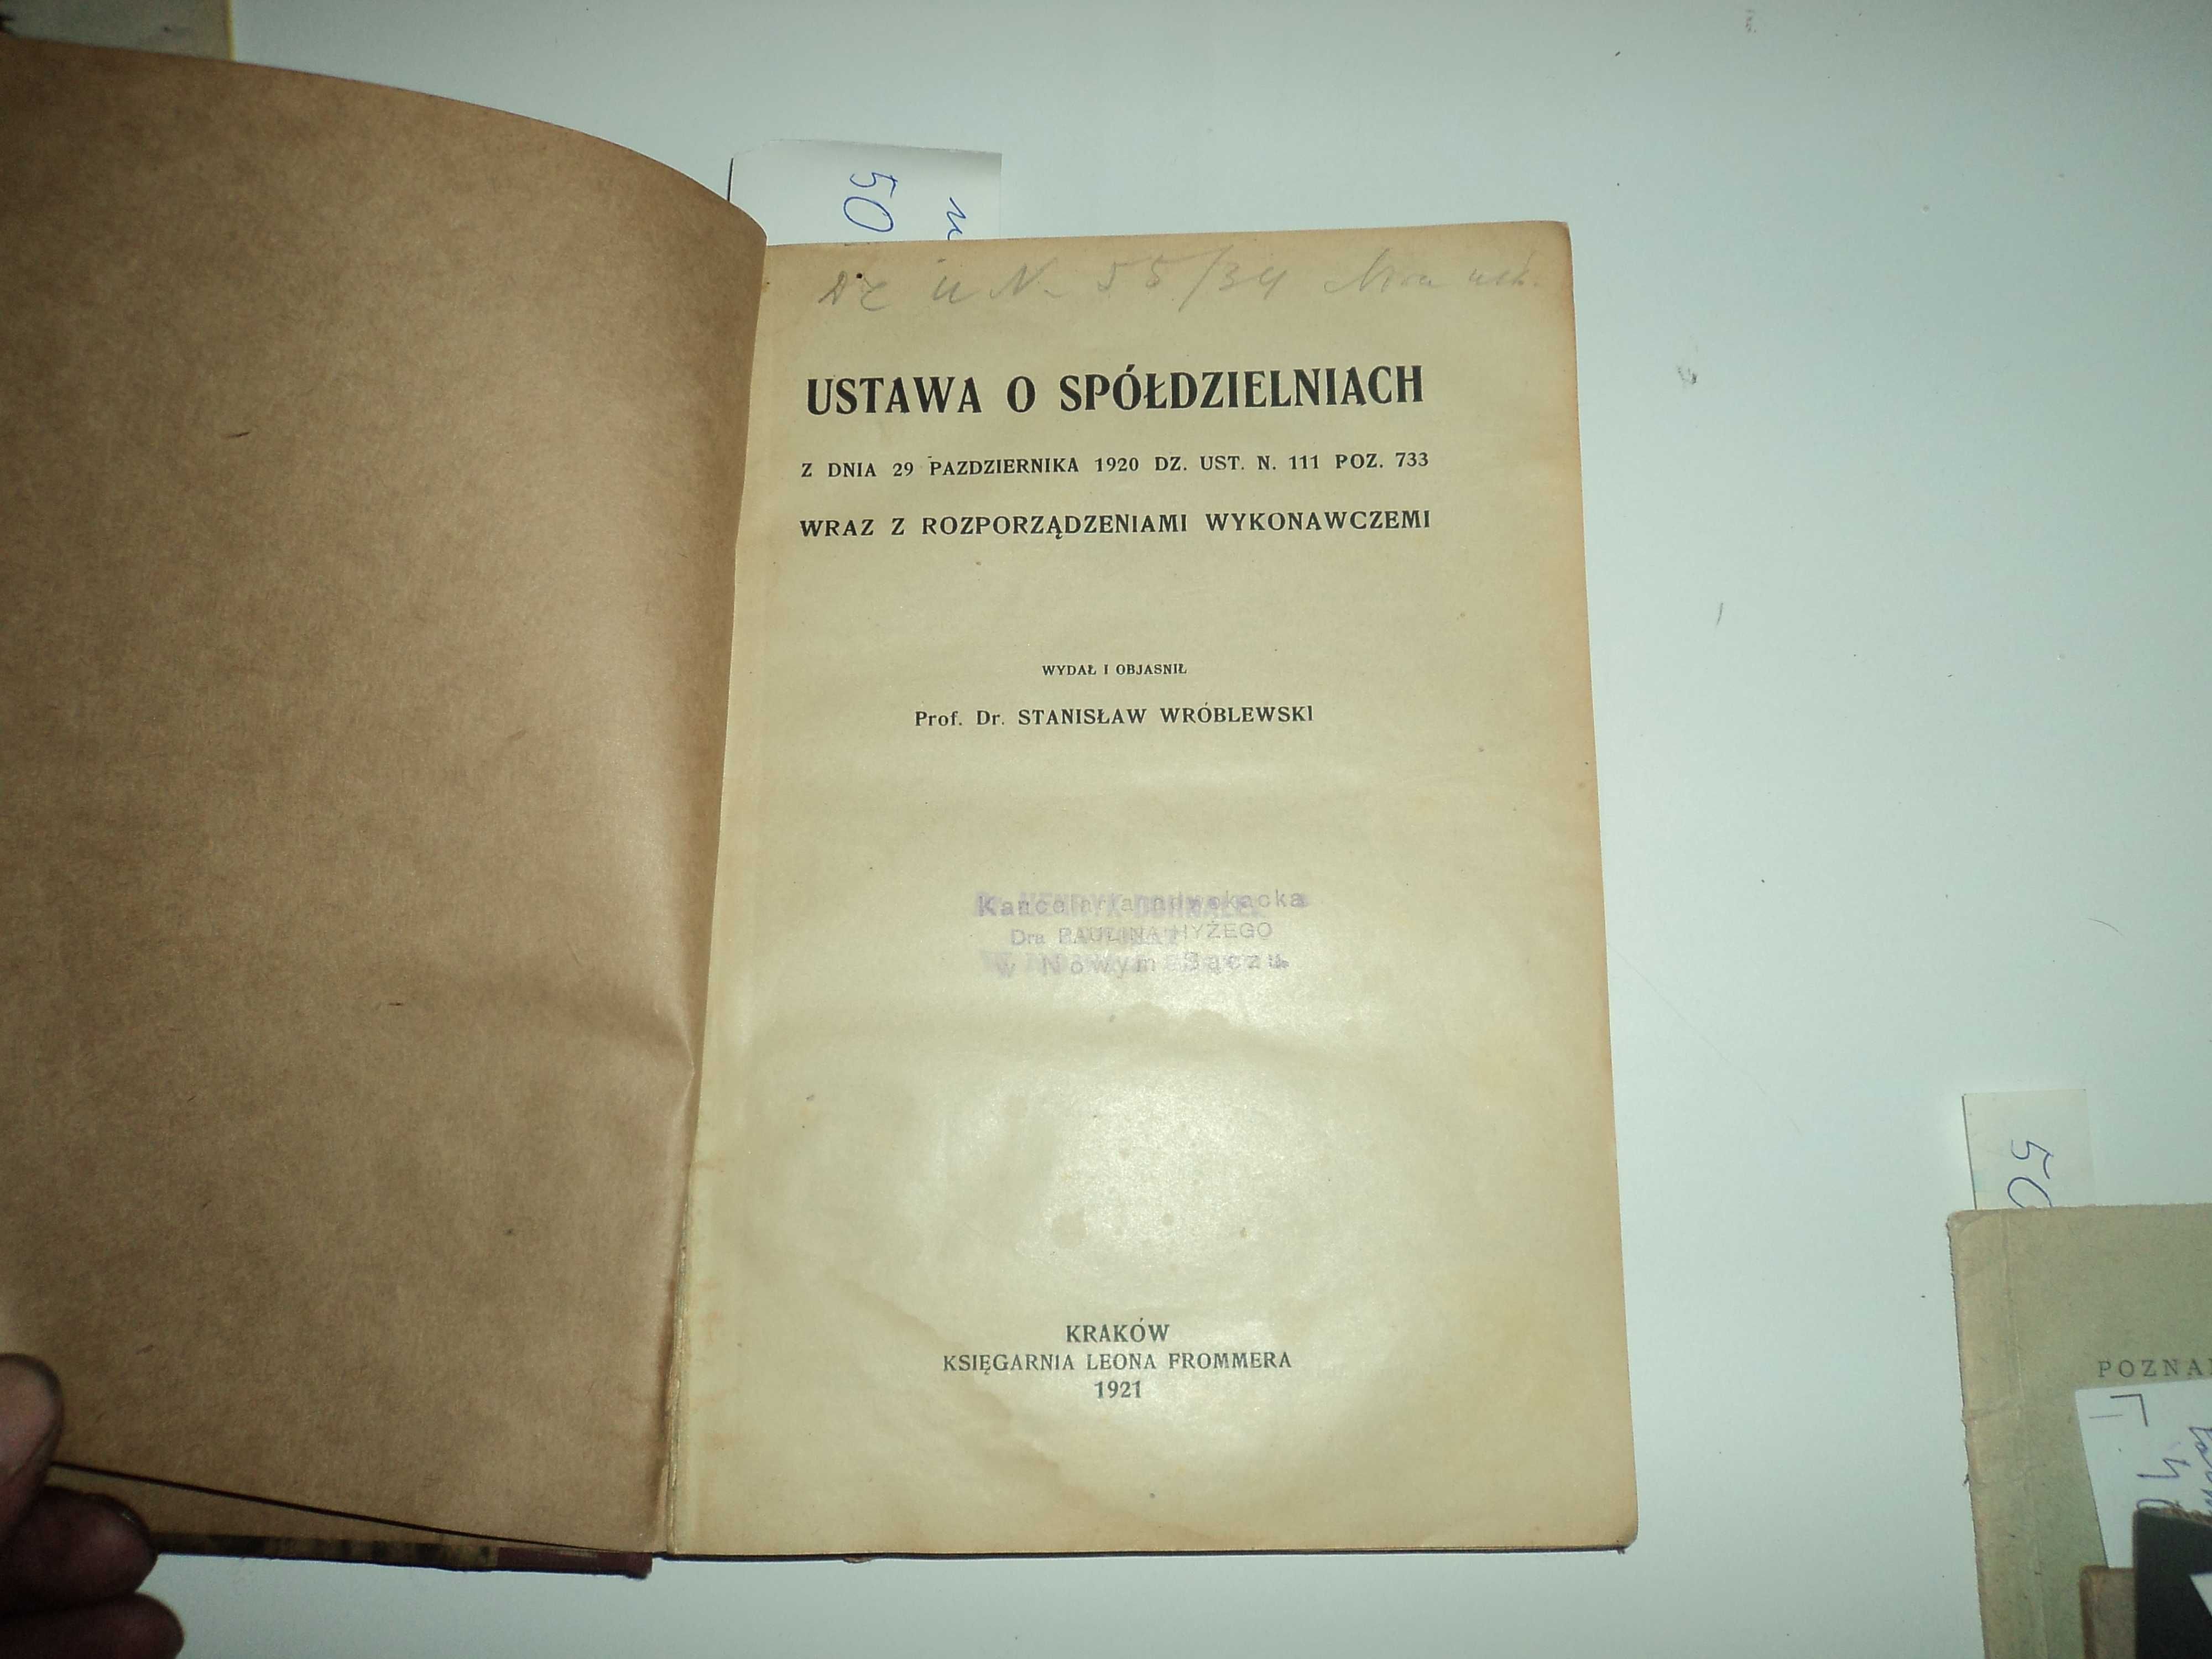 Ustawa o spółdzielniach - St. Wróblewski 1921r.